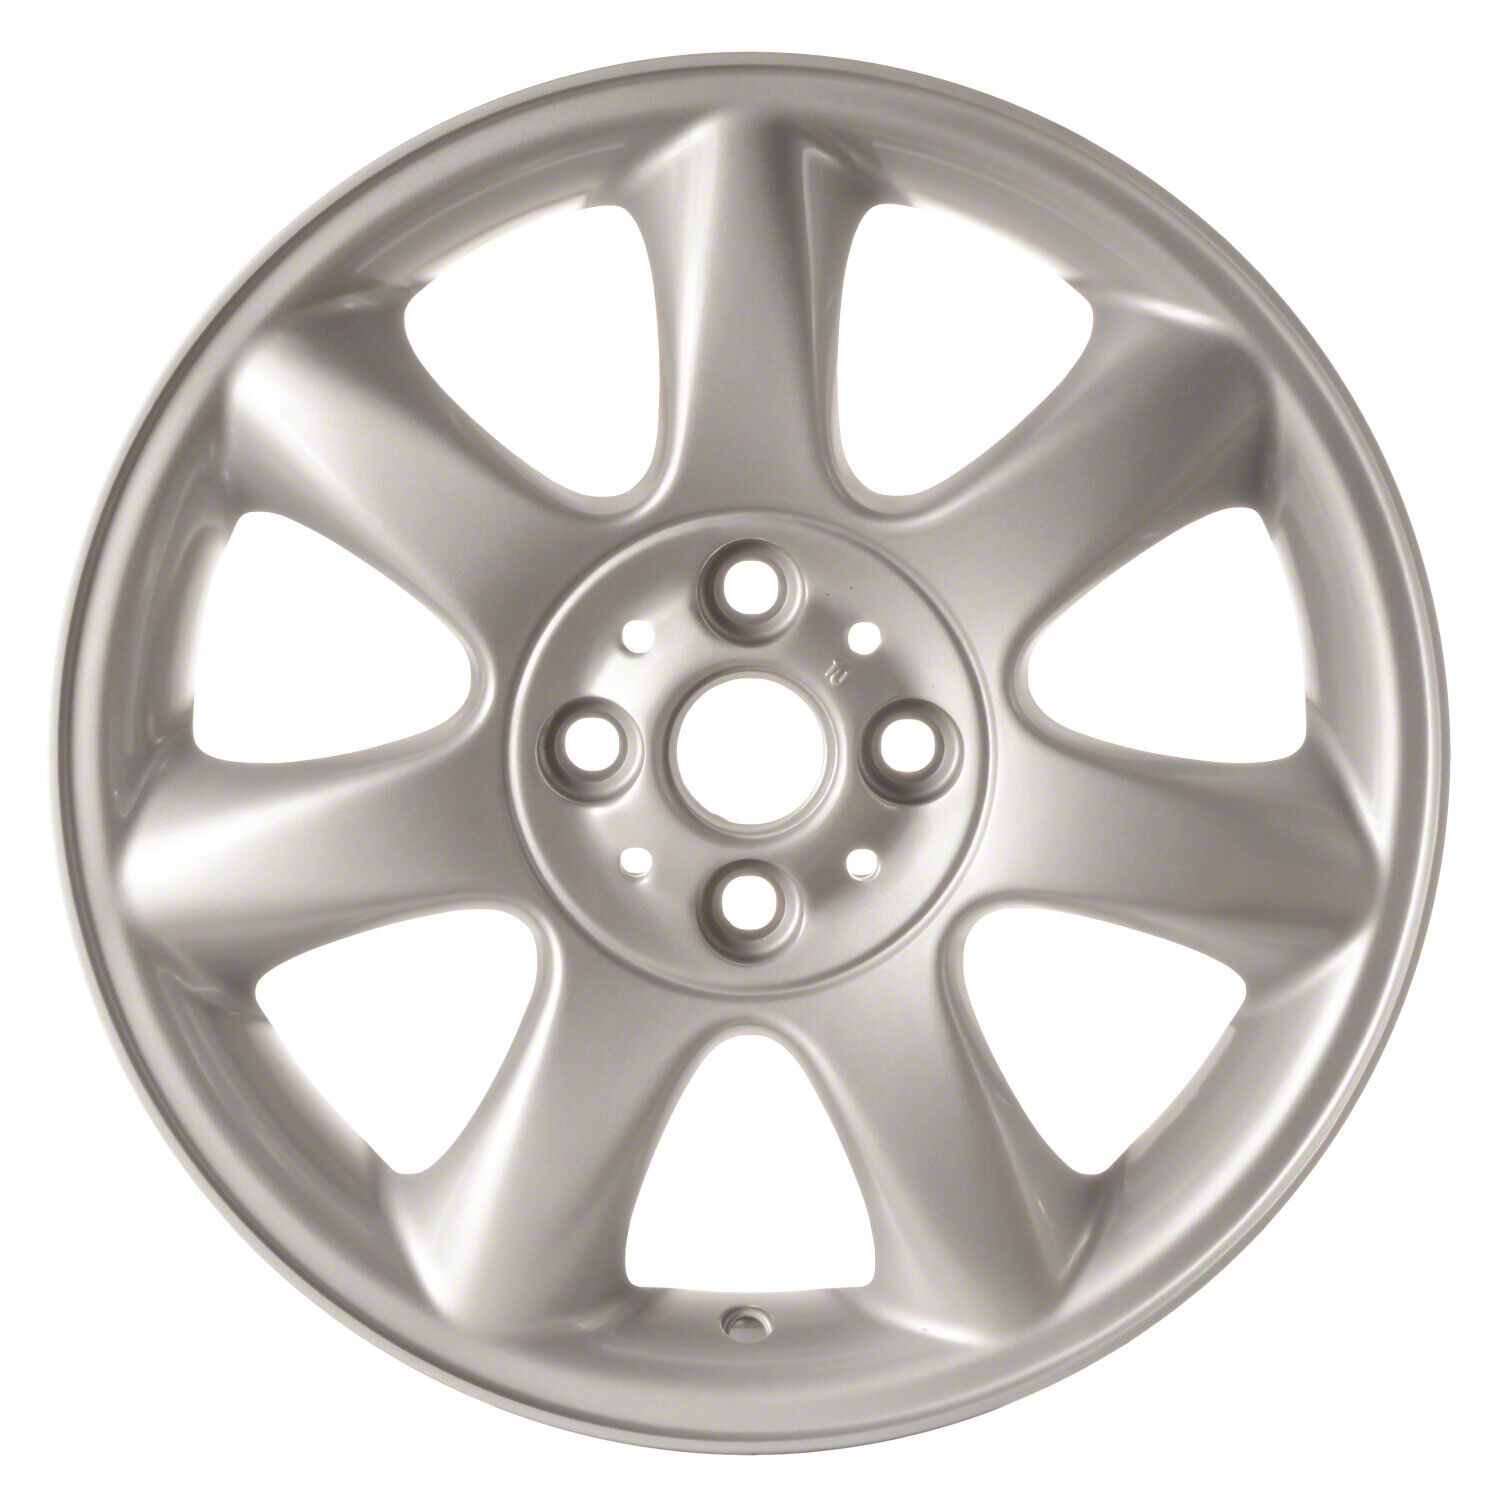 59570 Reconditioned OEM Aluminum Wheel 16x6.5 fits 2005-2014 Mini Cooper